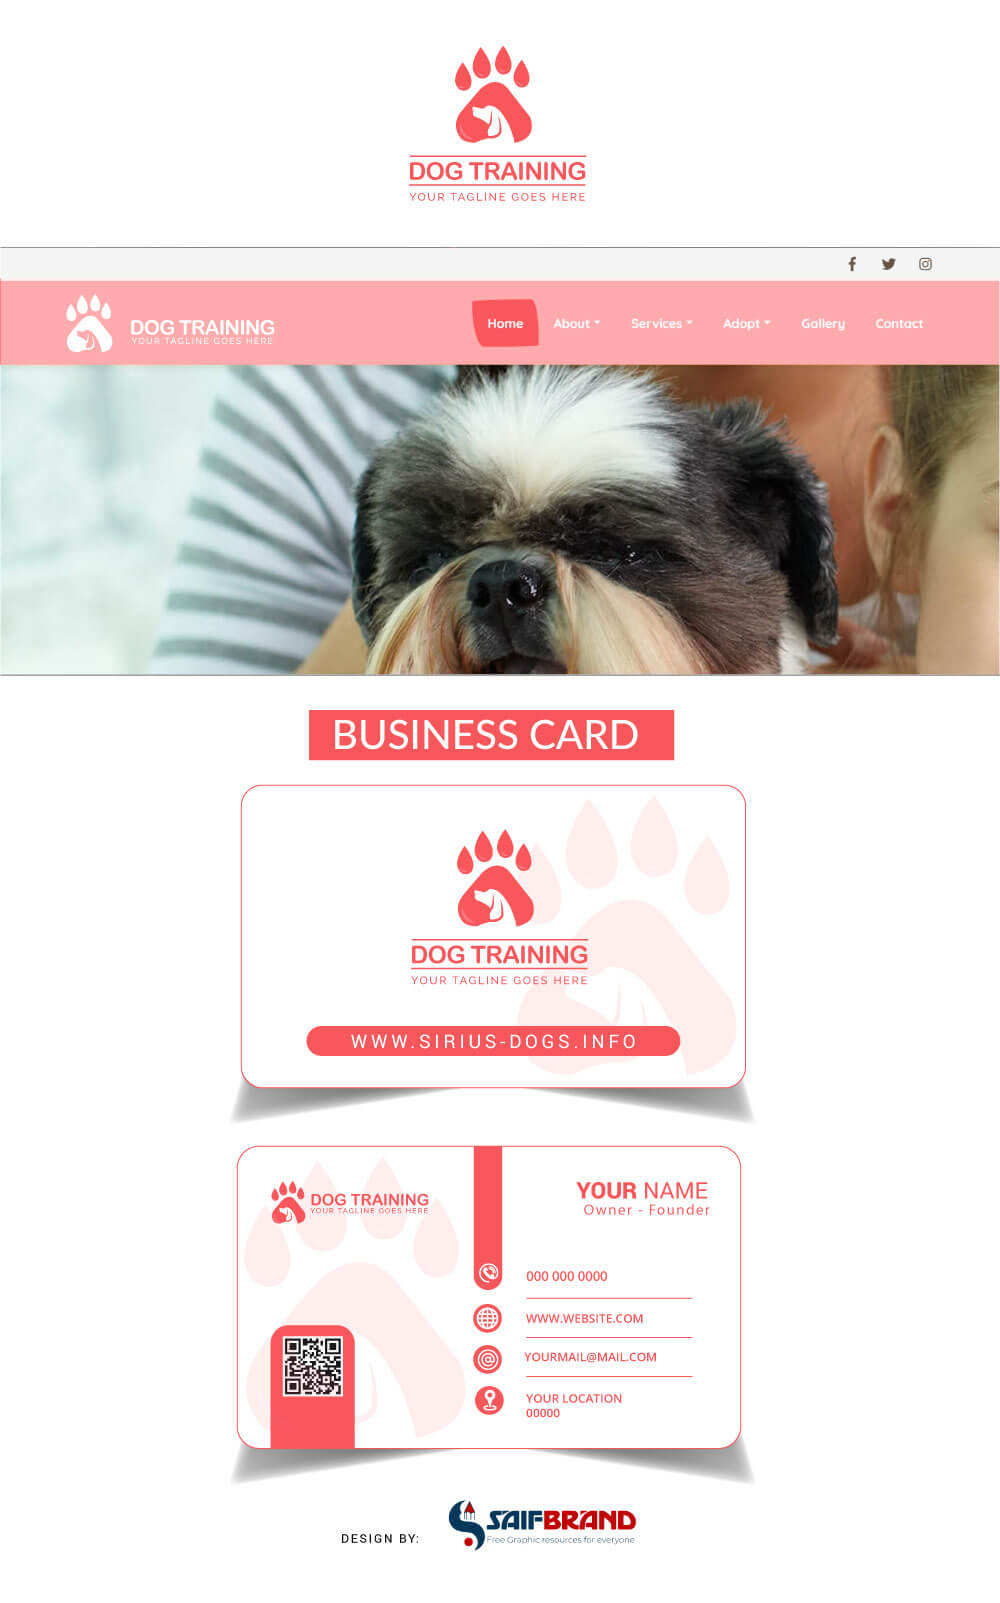 Dog-training-website-logo-Business-card-design-Free-Download